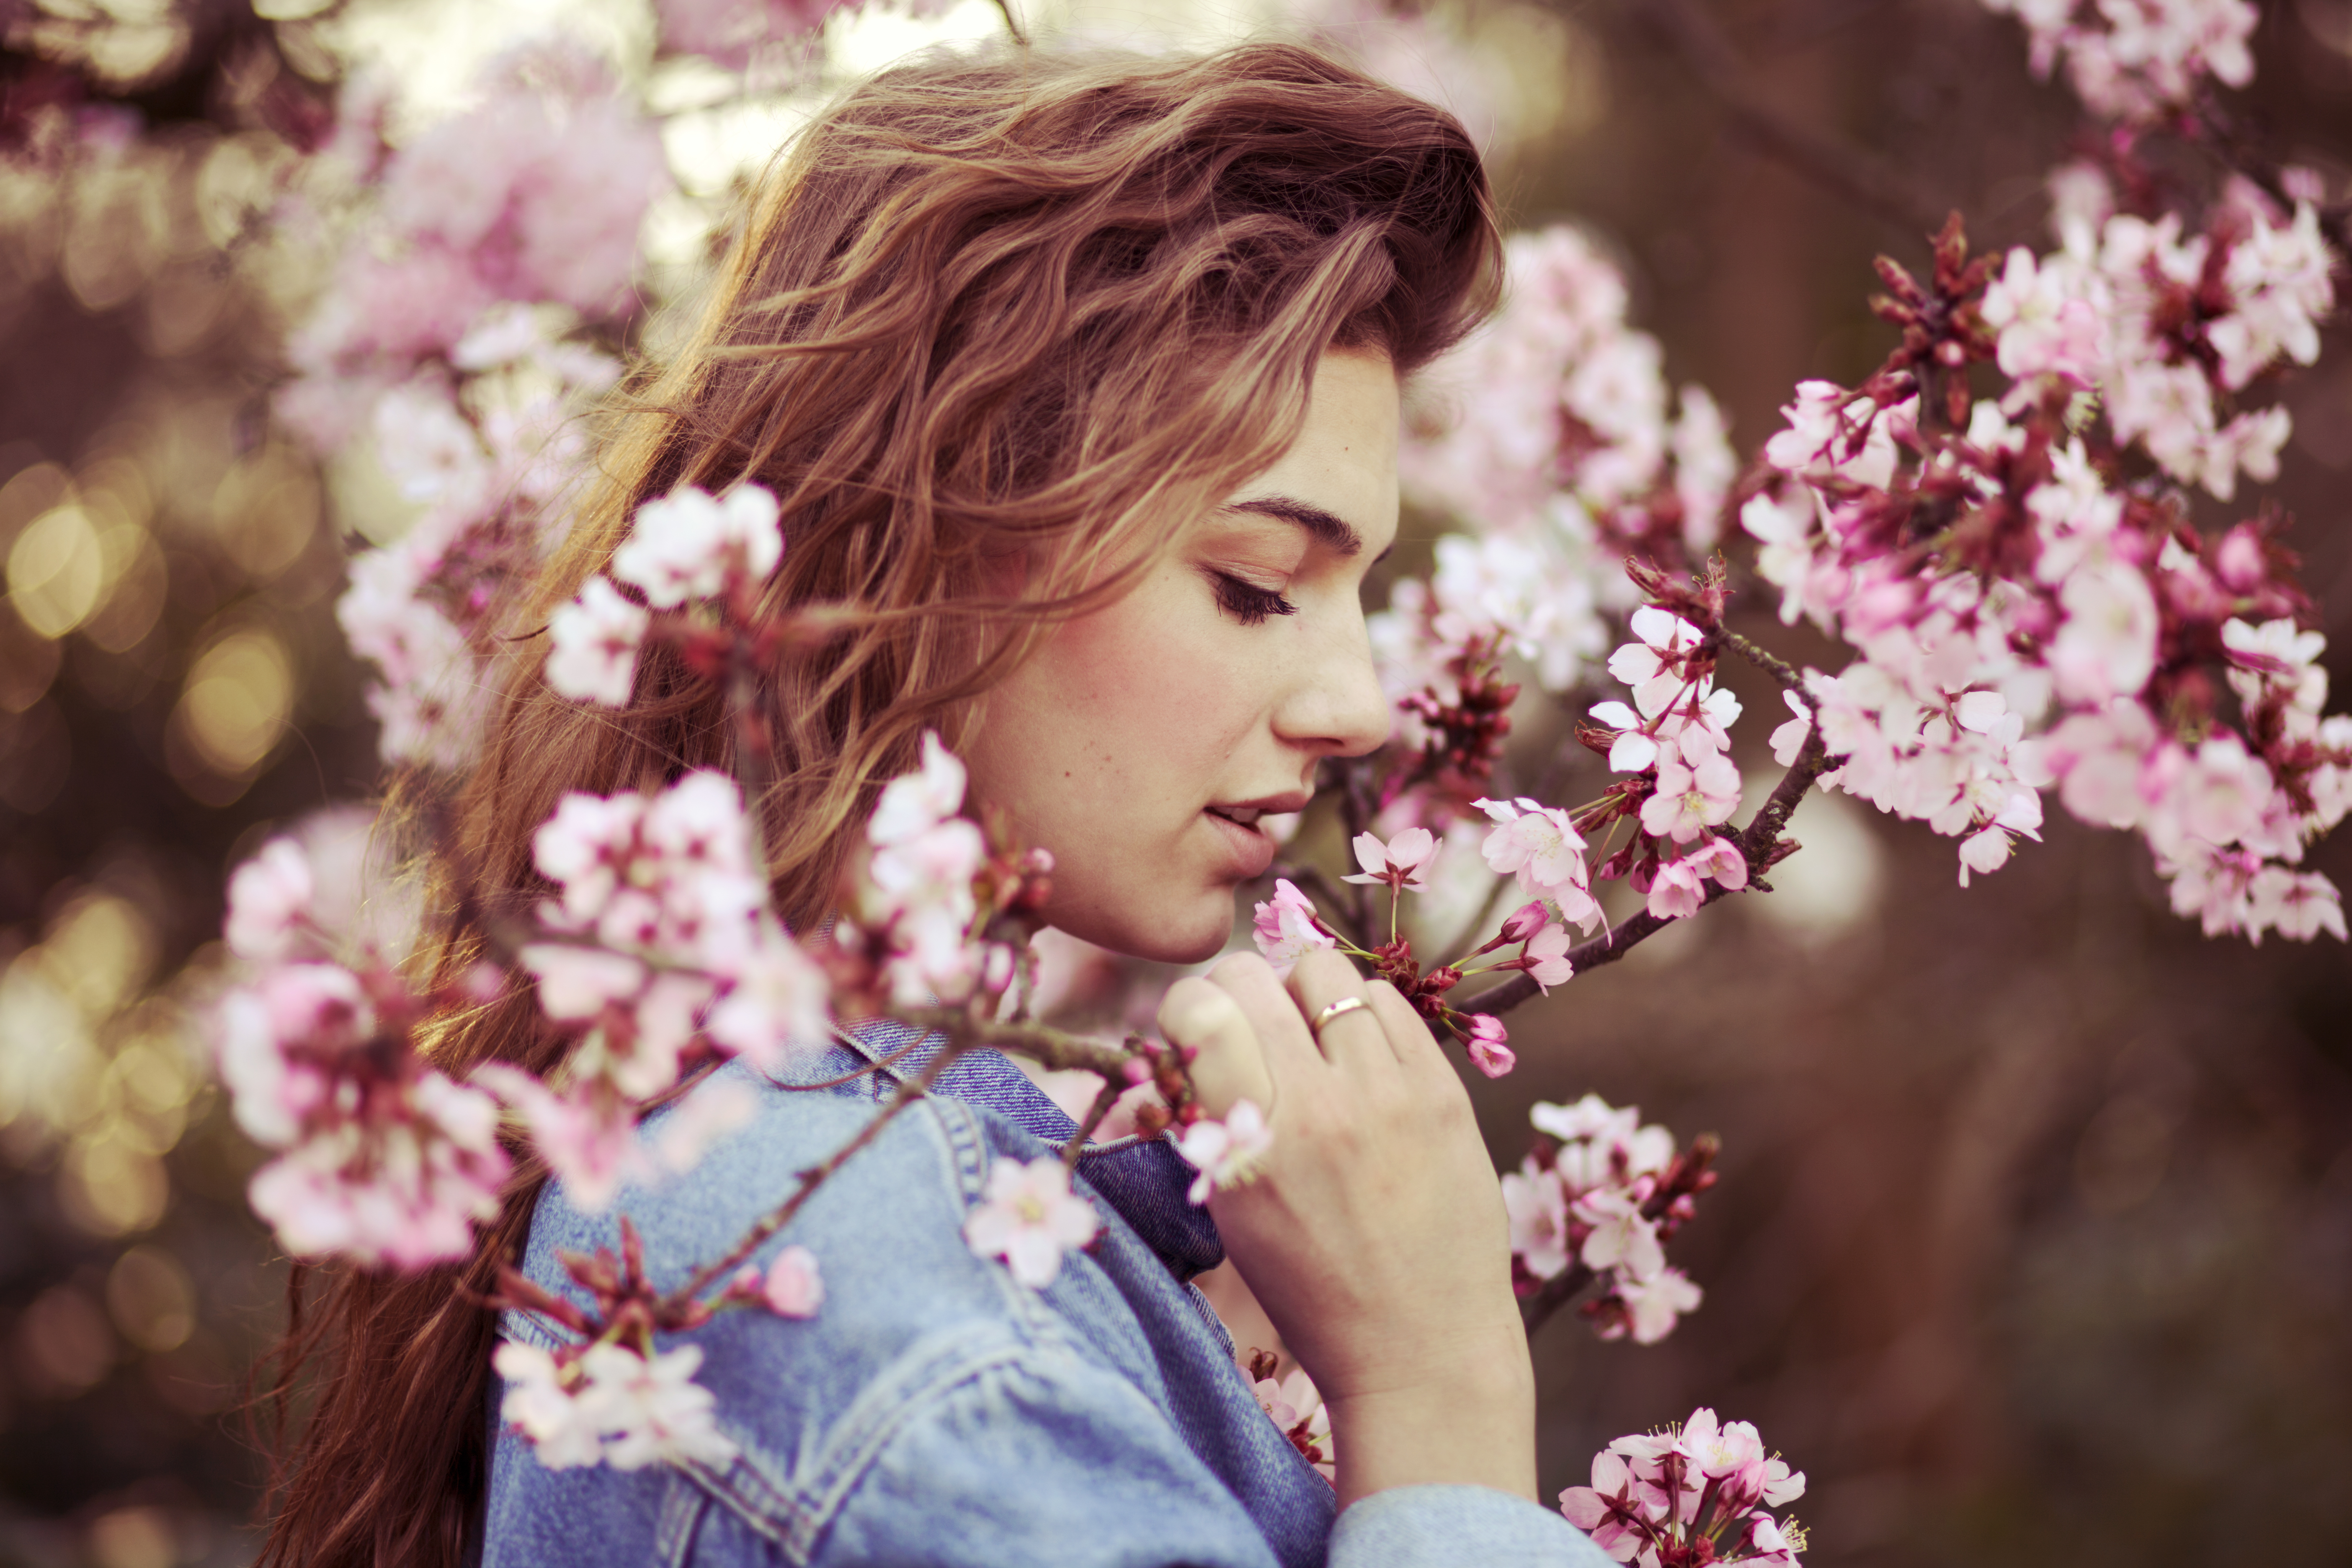 Blossom woman. Весенняя девушка. Девушка весной. Девушка в цветущем саду.